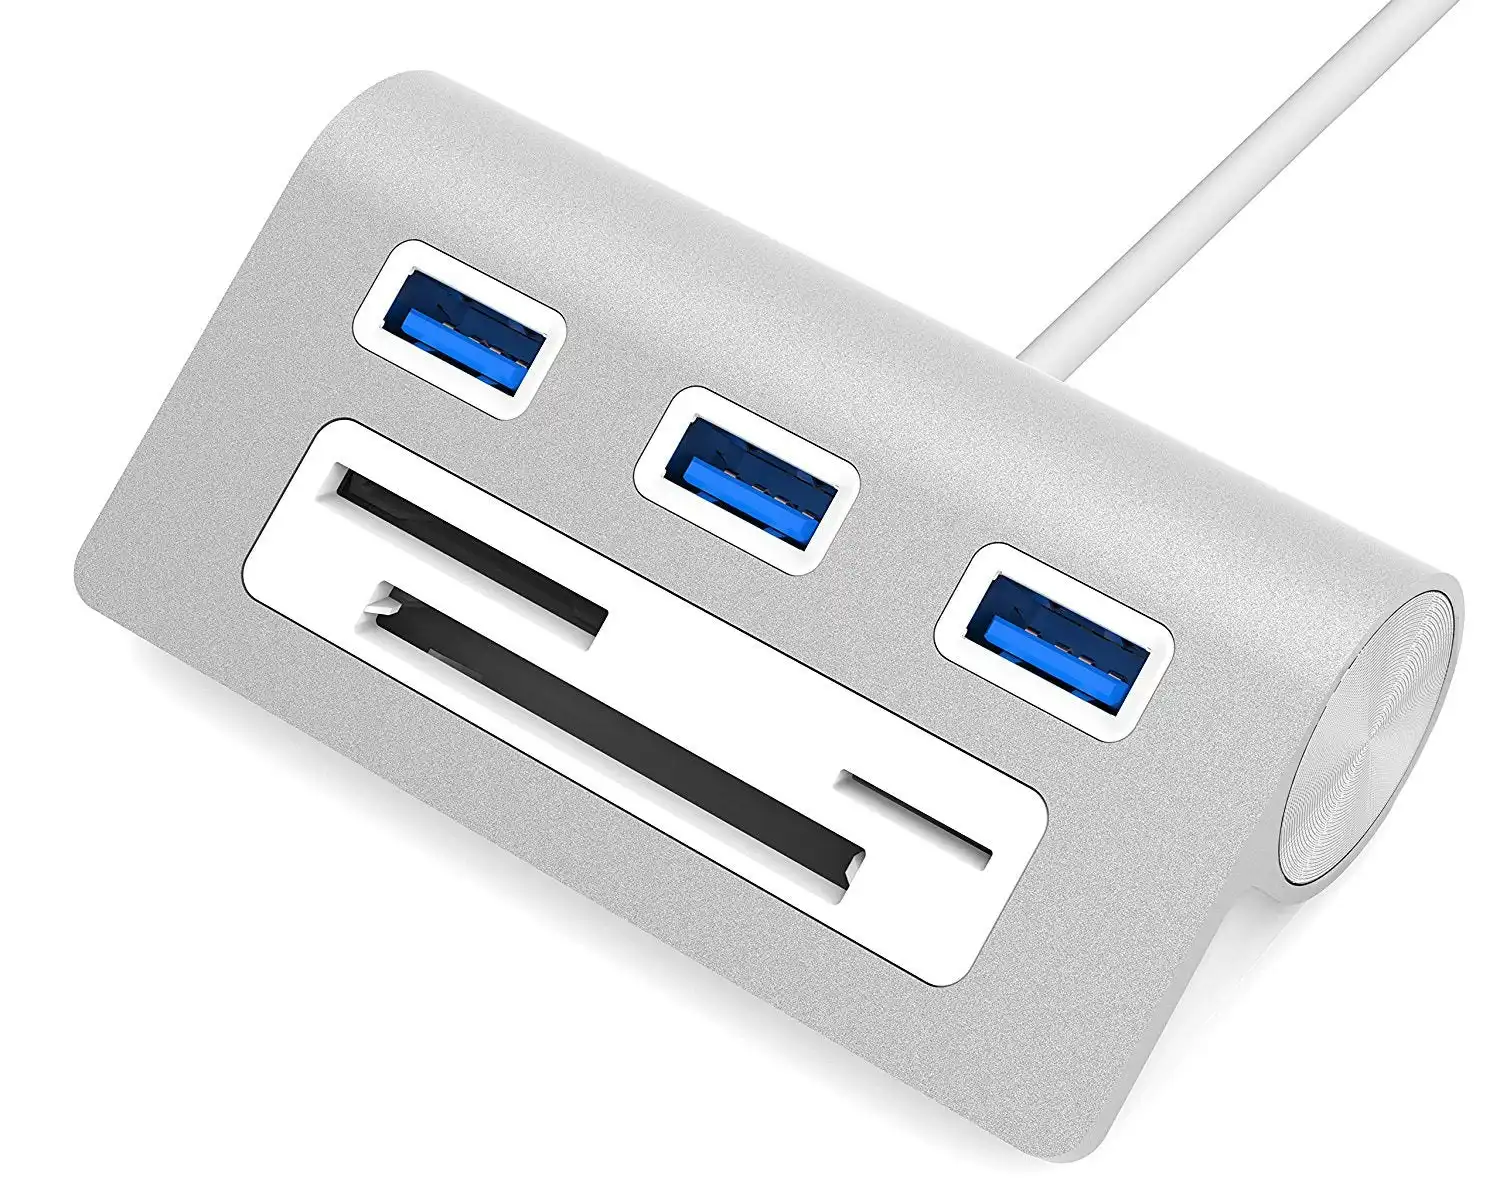 Sabrent Premium 3 Port Aluminum USB 3.0 Hub Multi-In-1 Card Reader